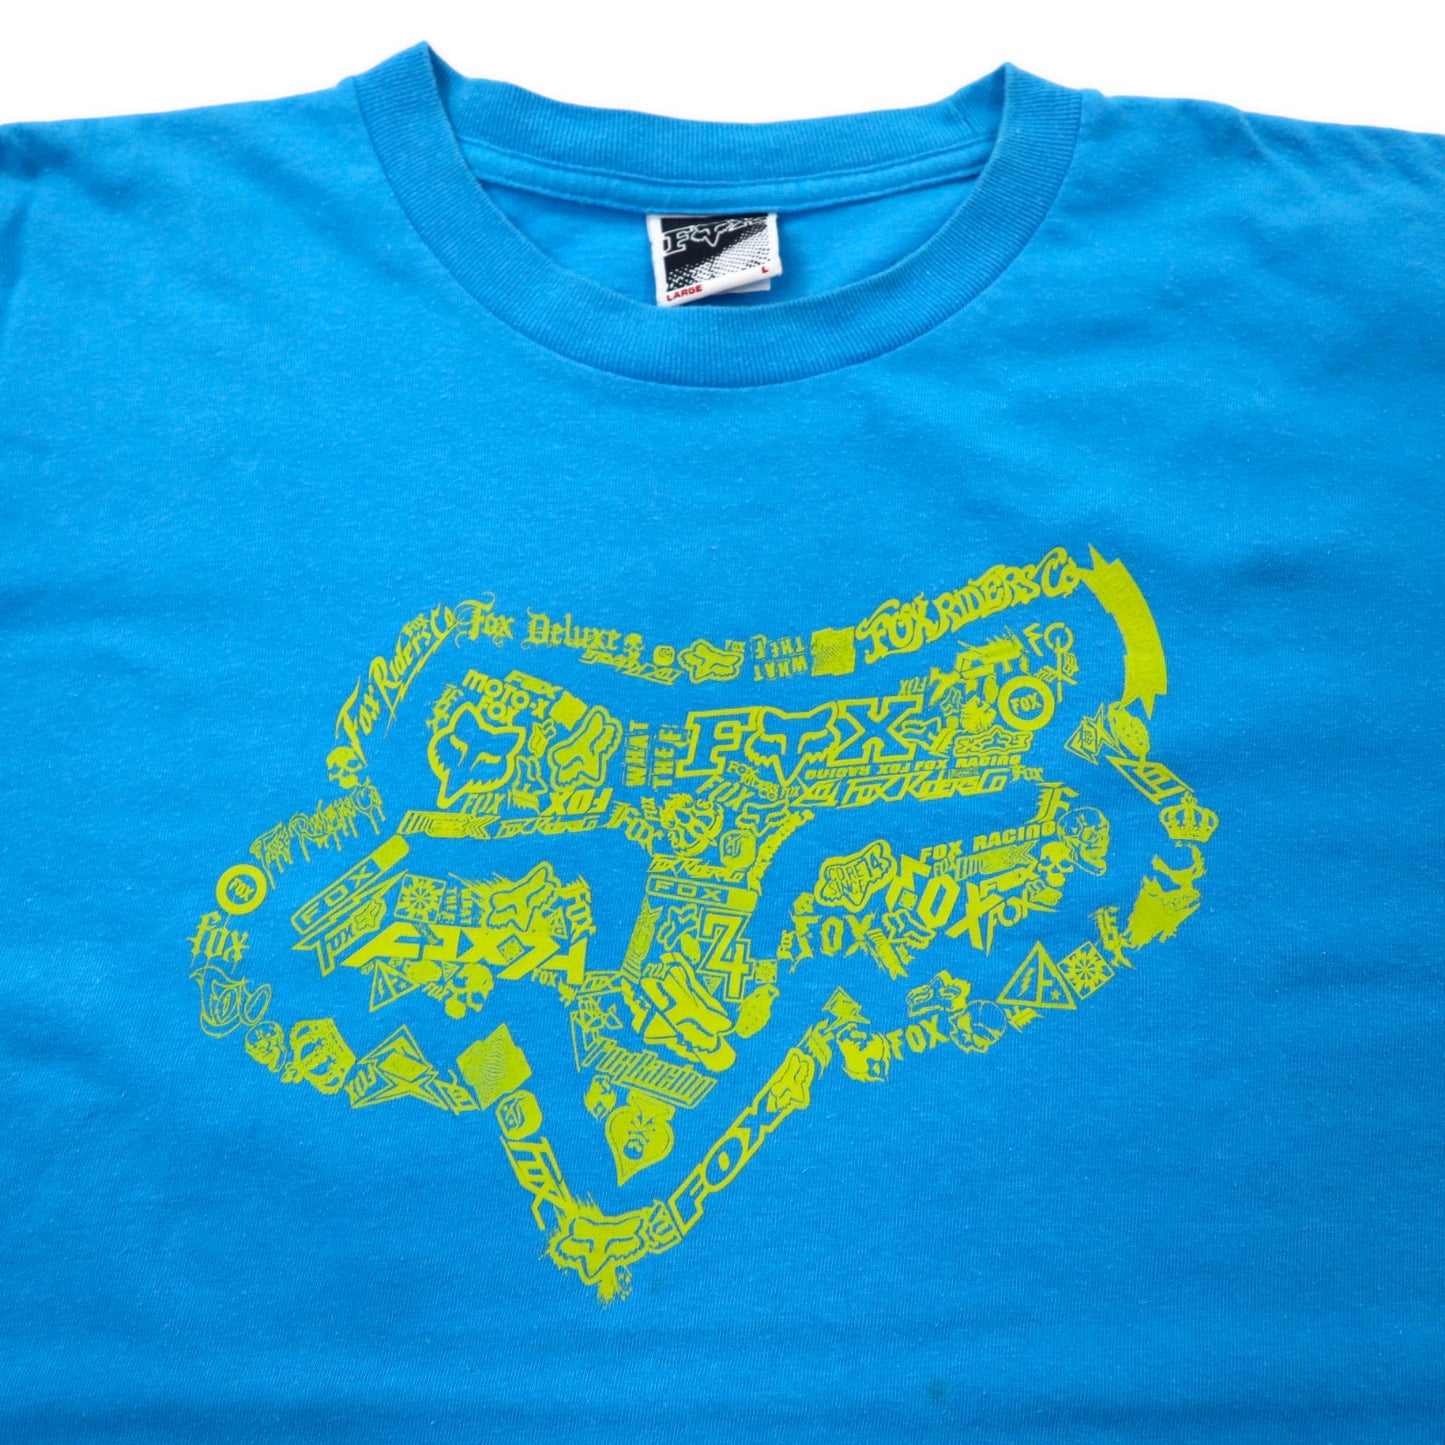 FOX RACING ロゴプリントTシャツ L ブルー コットン メキシコ製